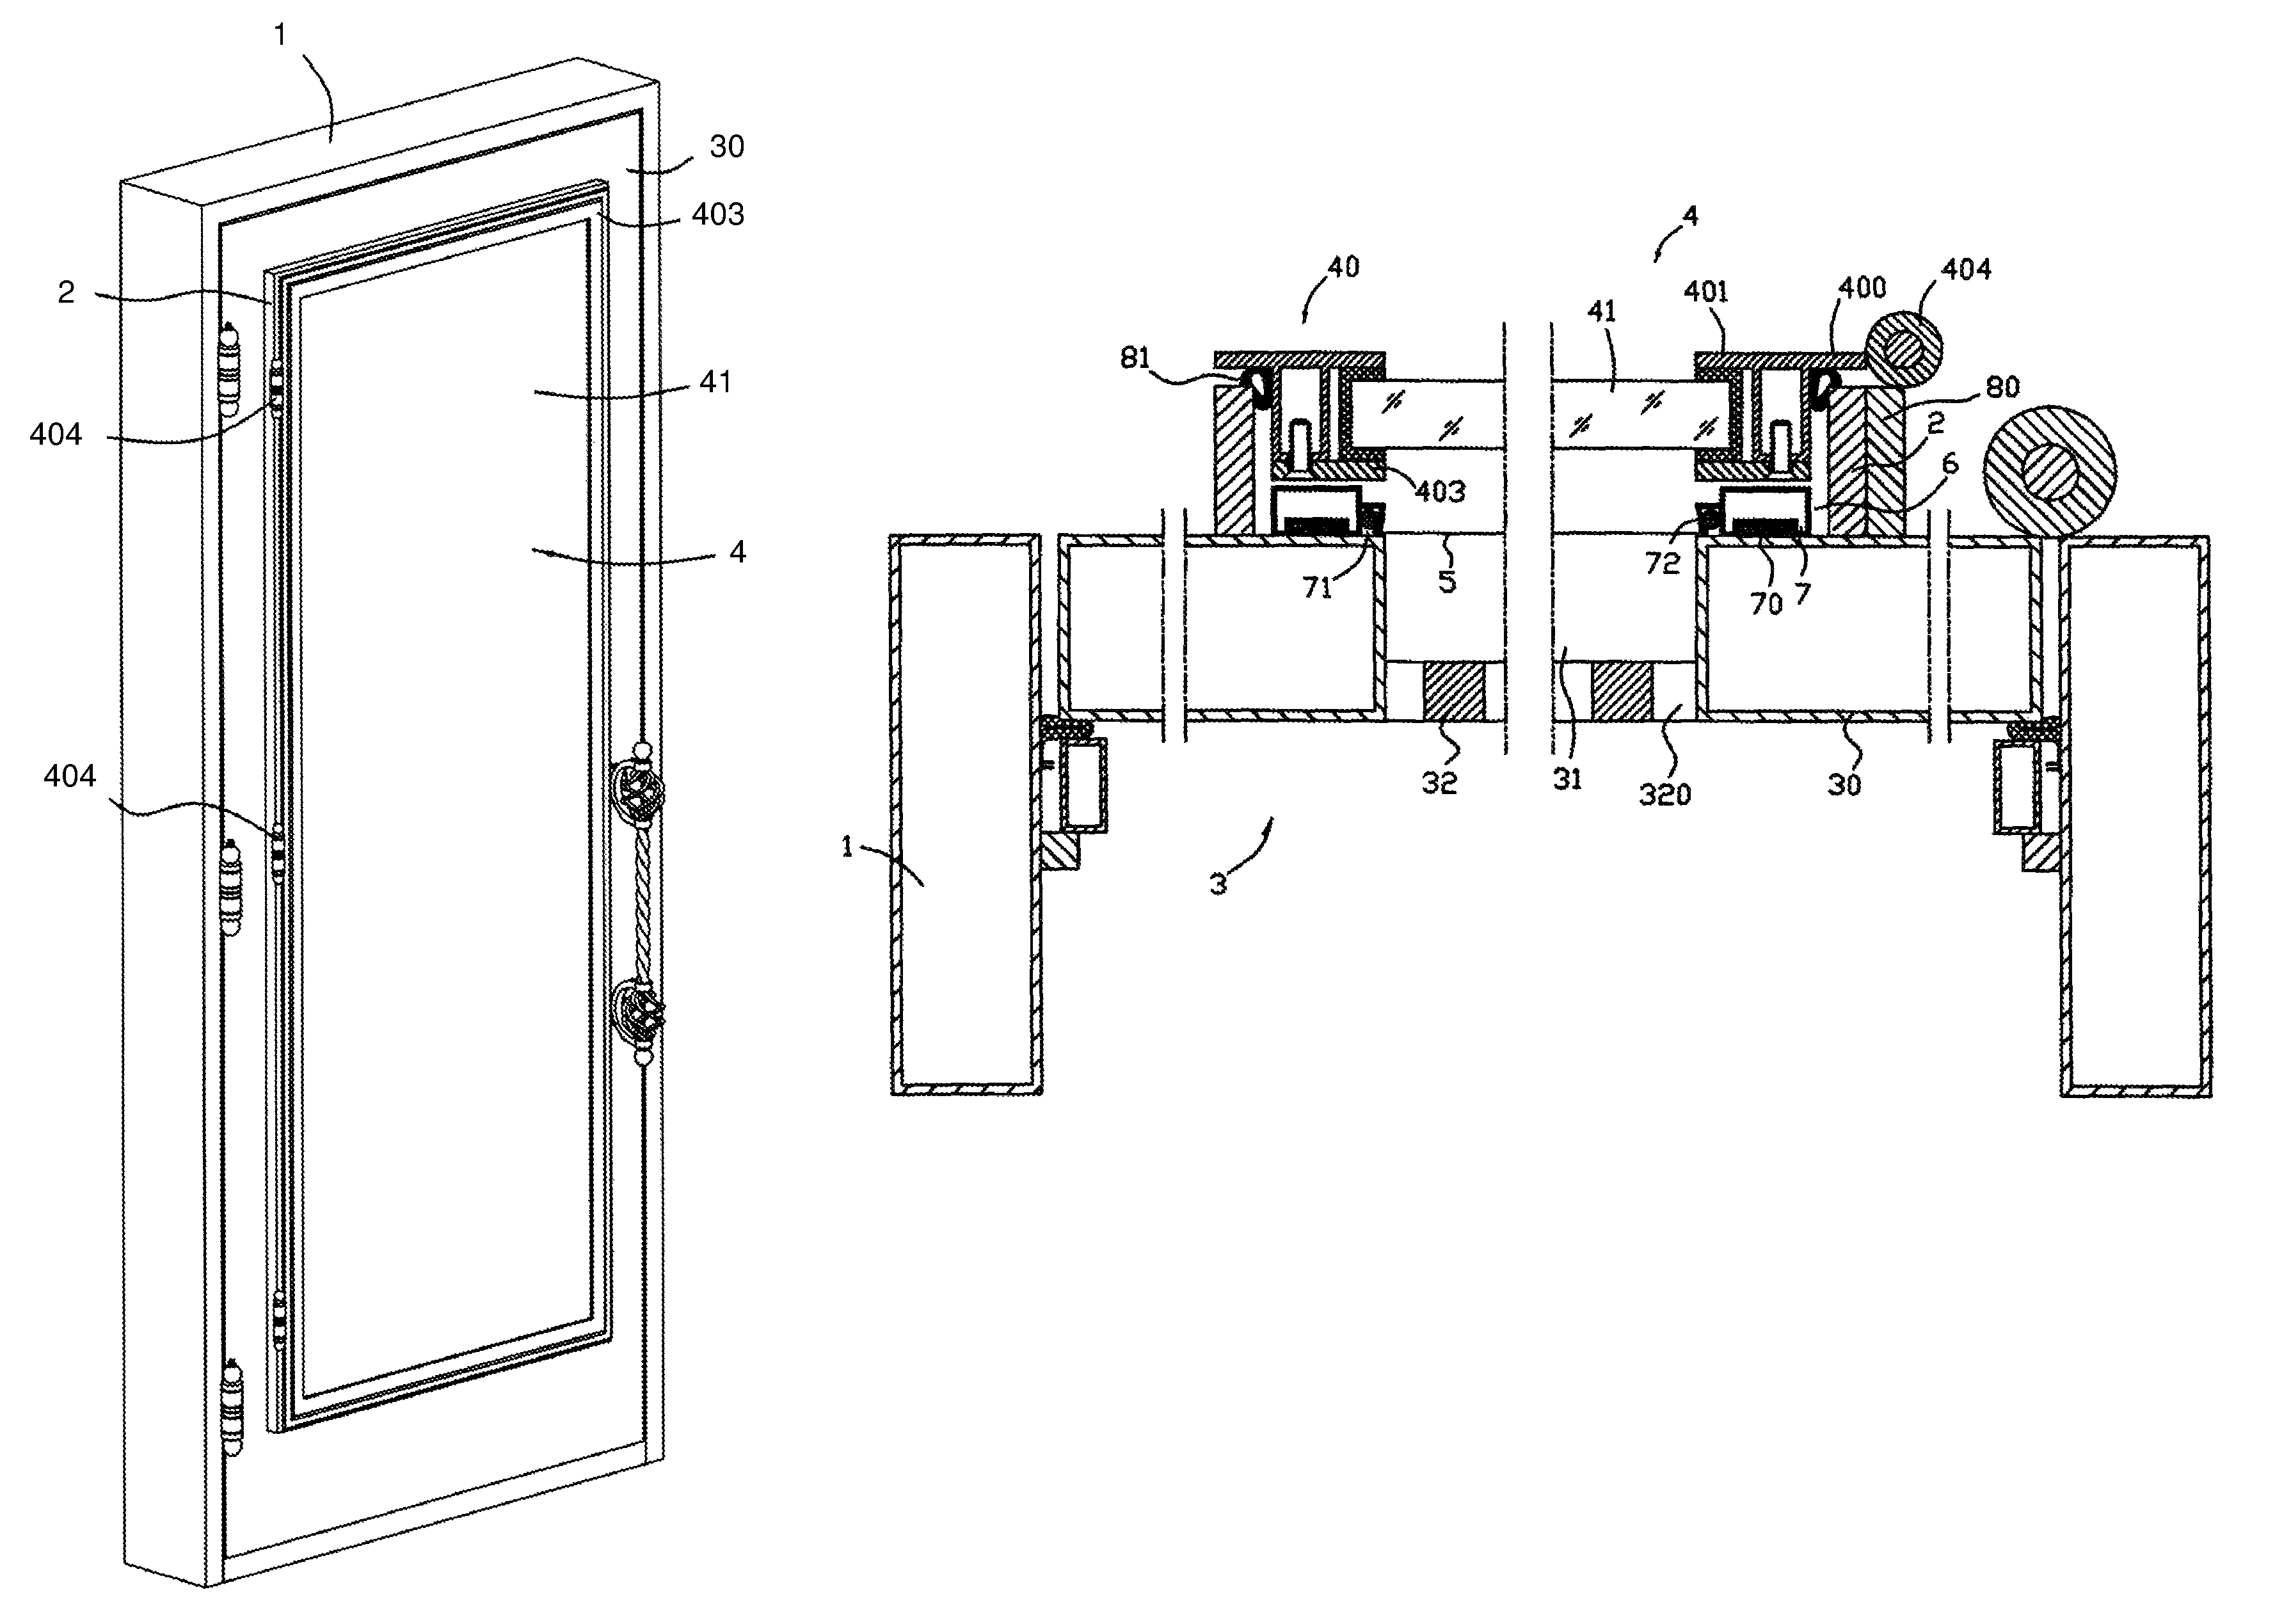 Structure for steel door